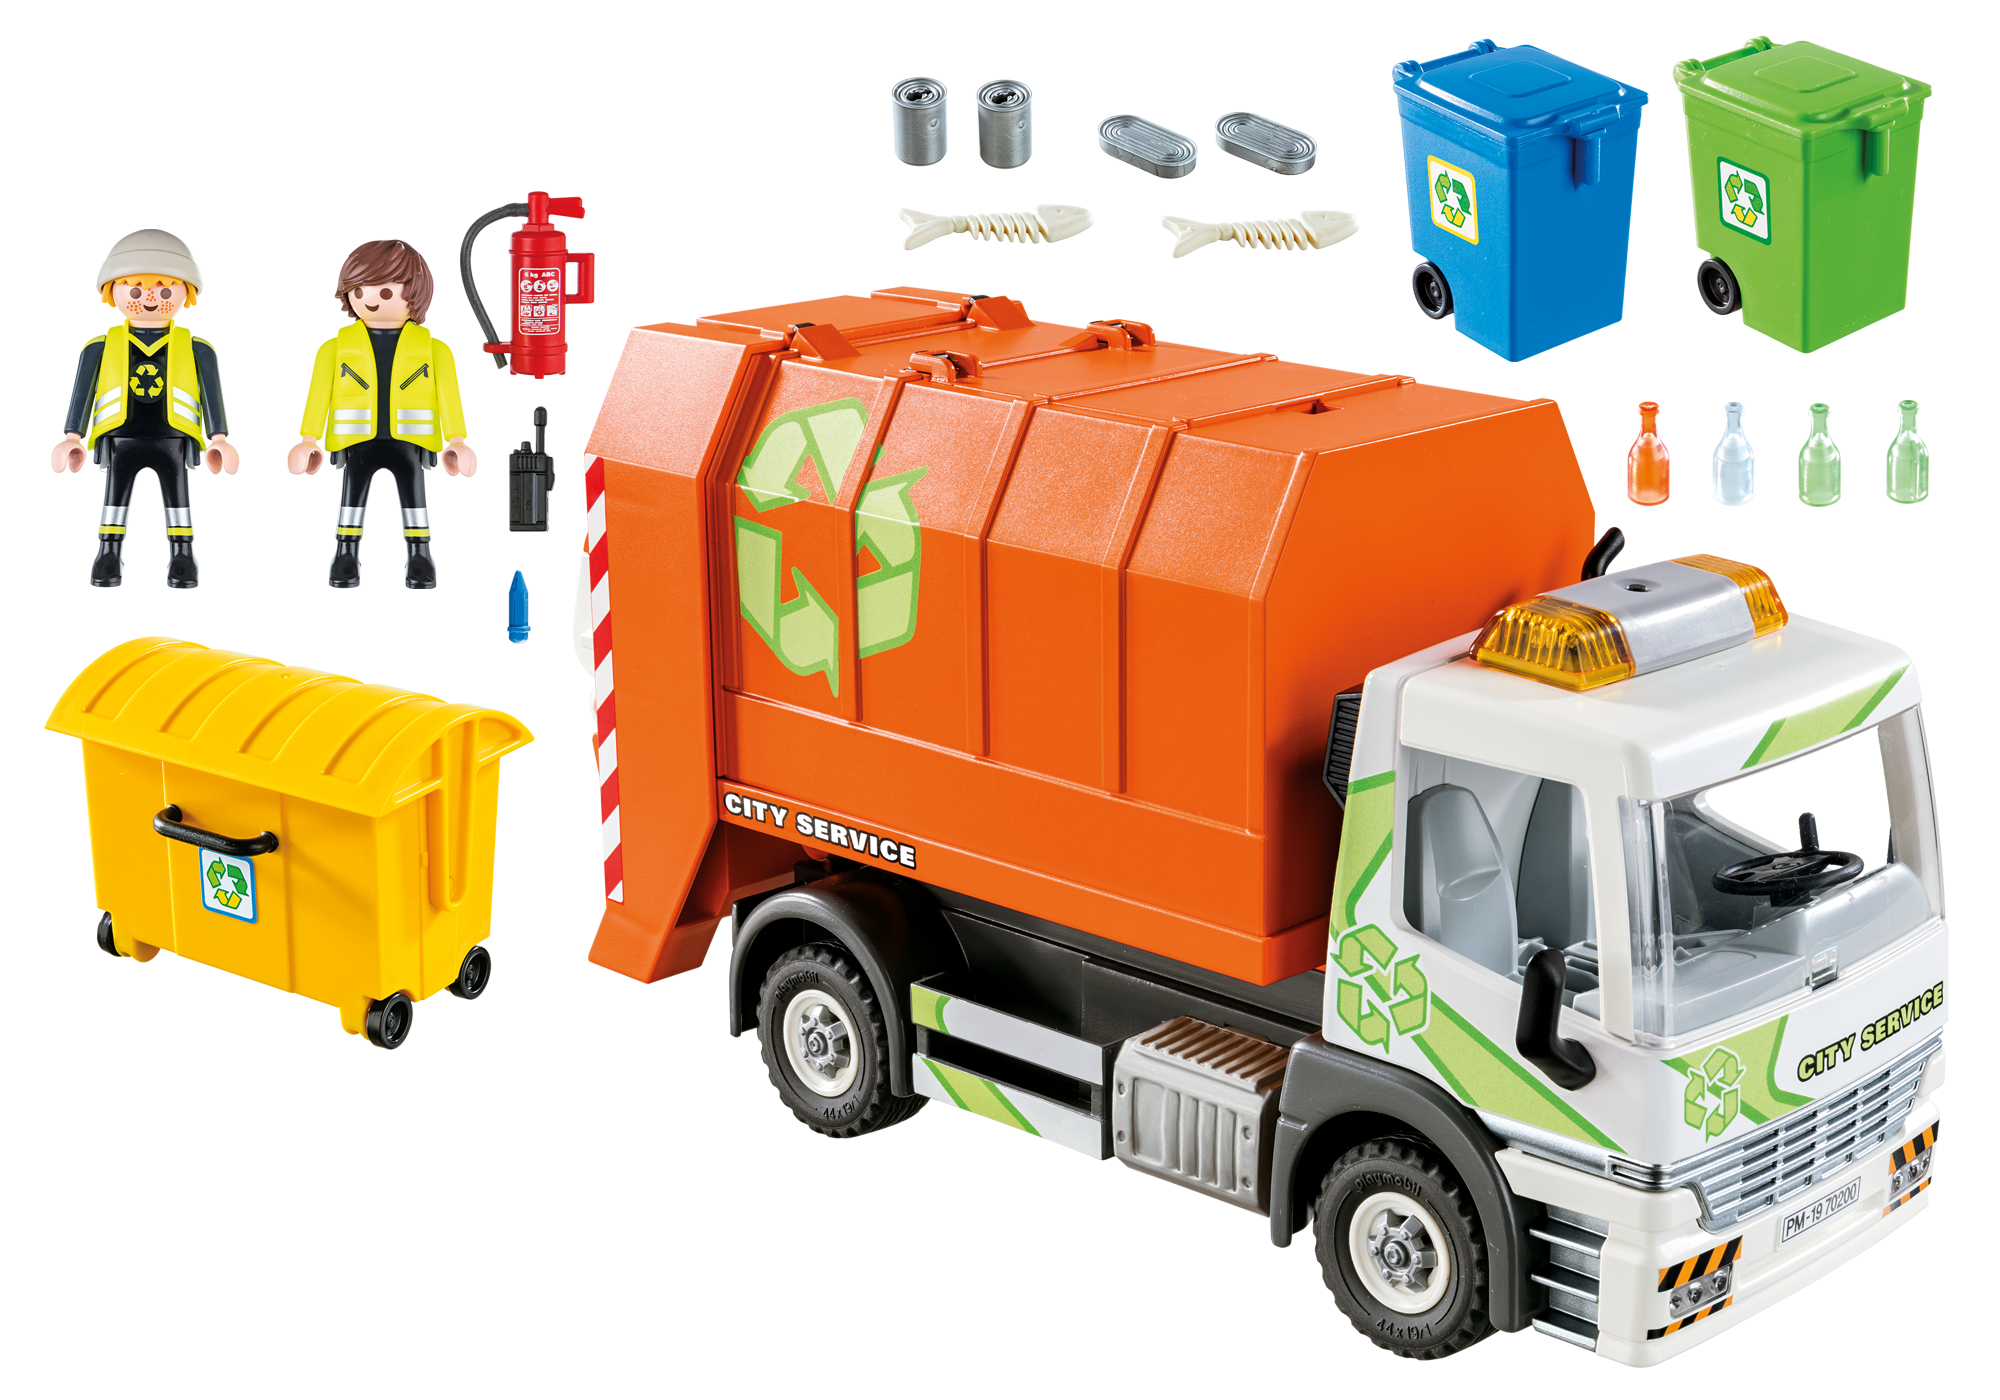 camion de recyclage jouet